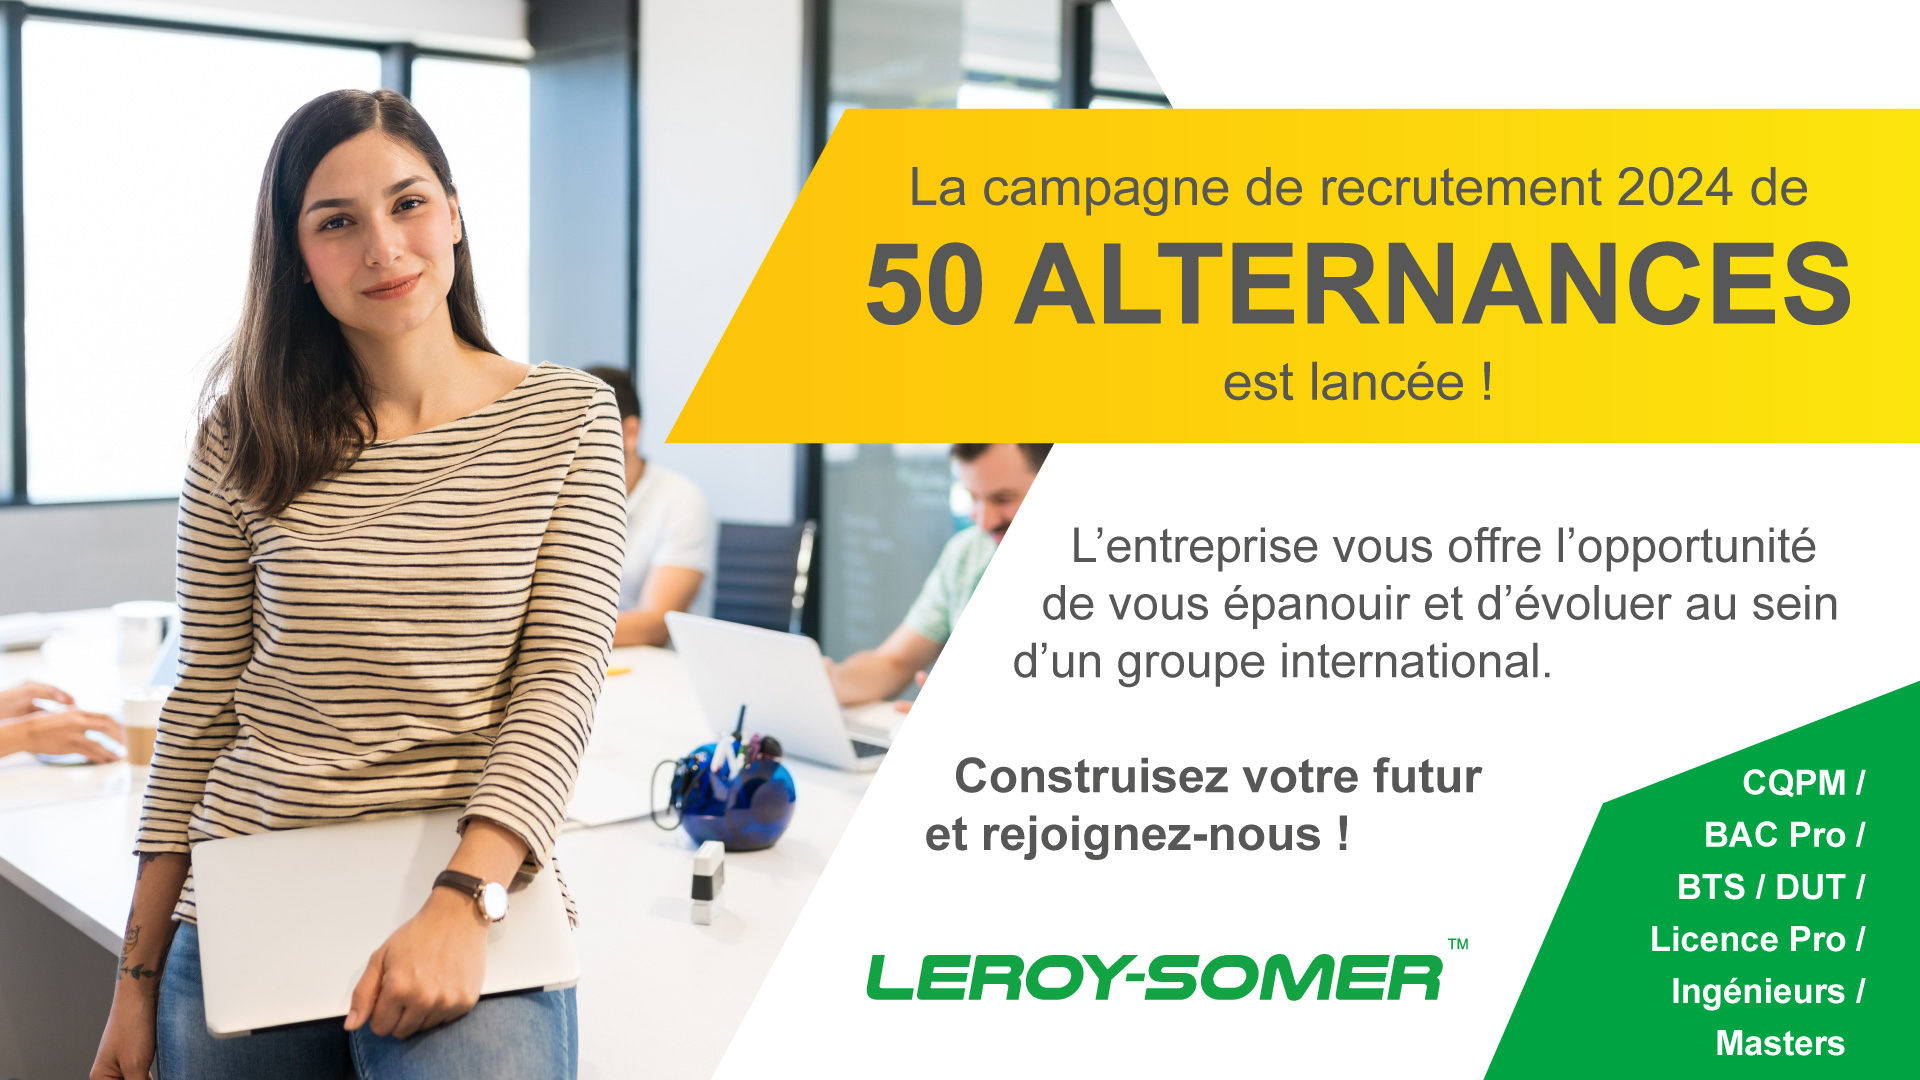 Recrutement de 50 alternances chez Nidec Leroy-Somer pour 2024